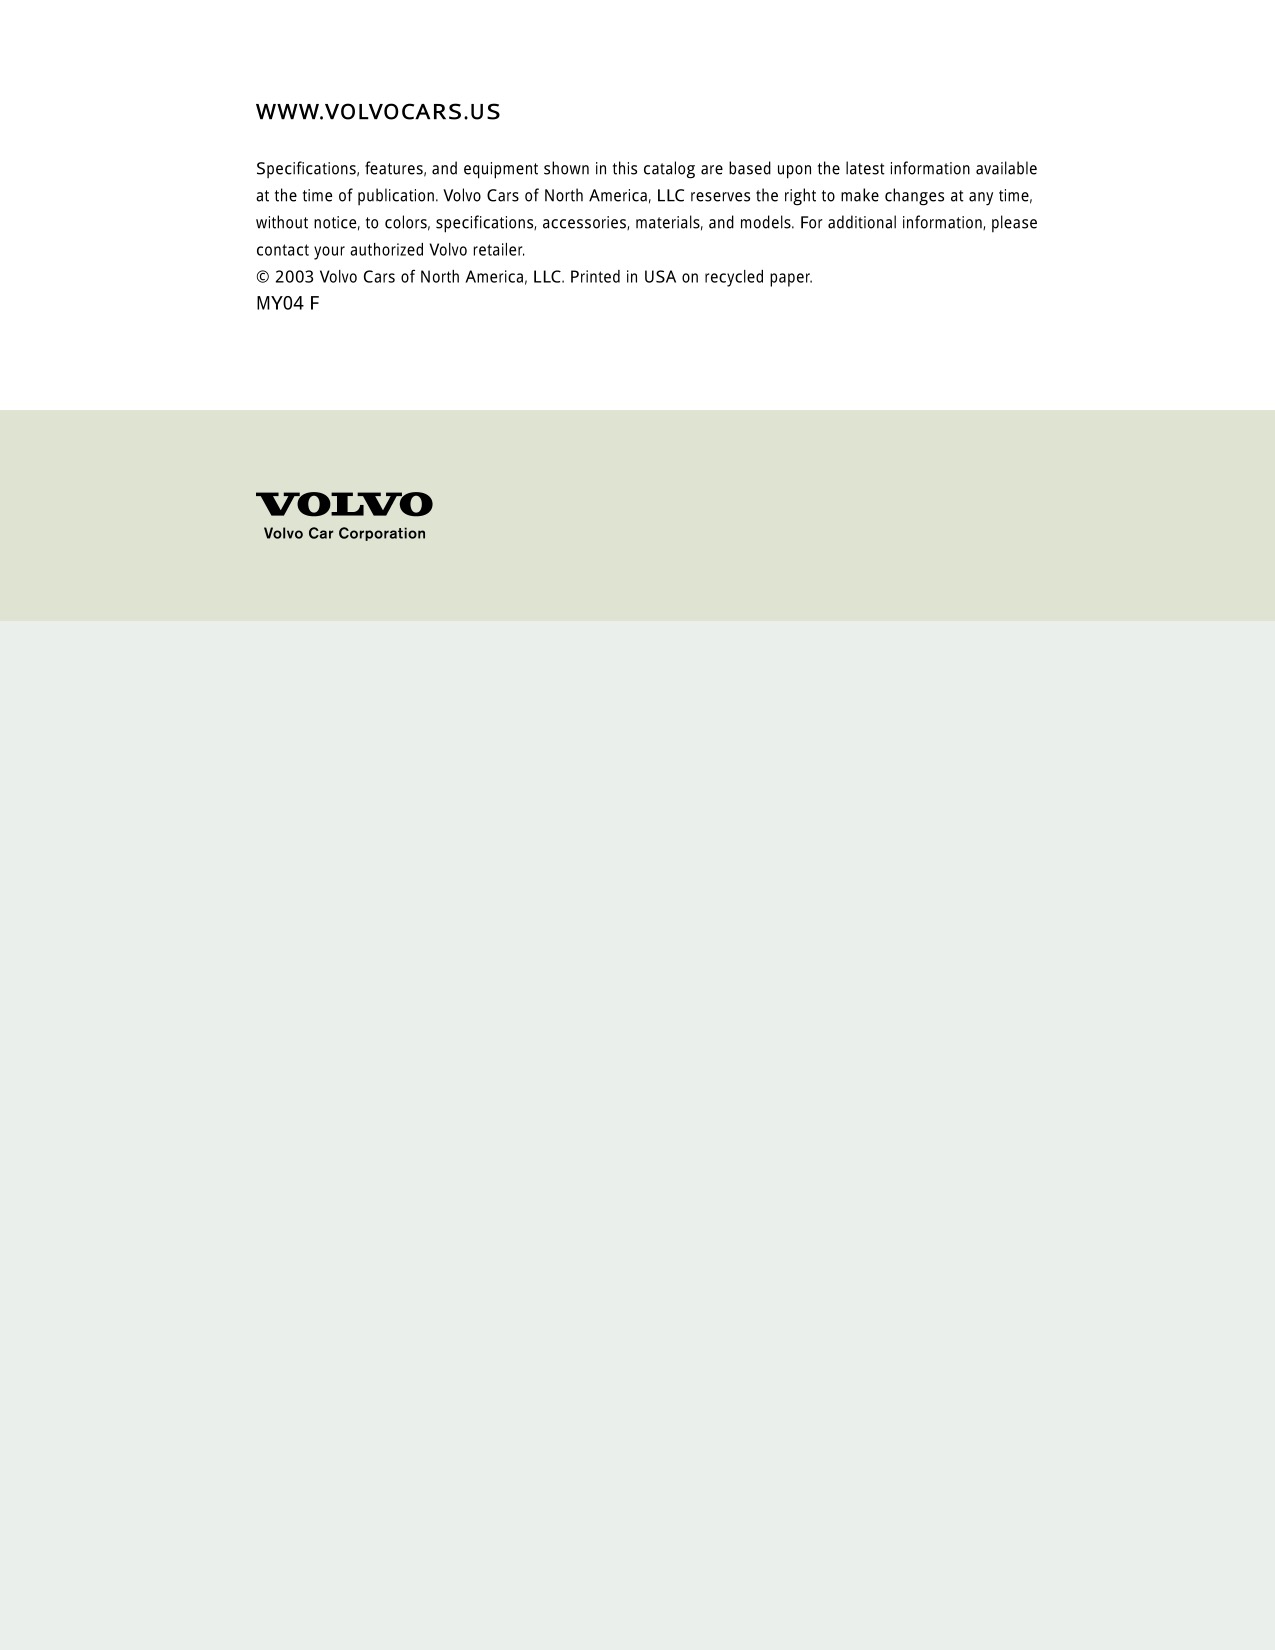 2004 Volvo V70 Brochure Page 27